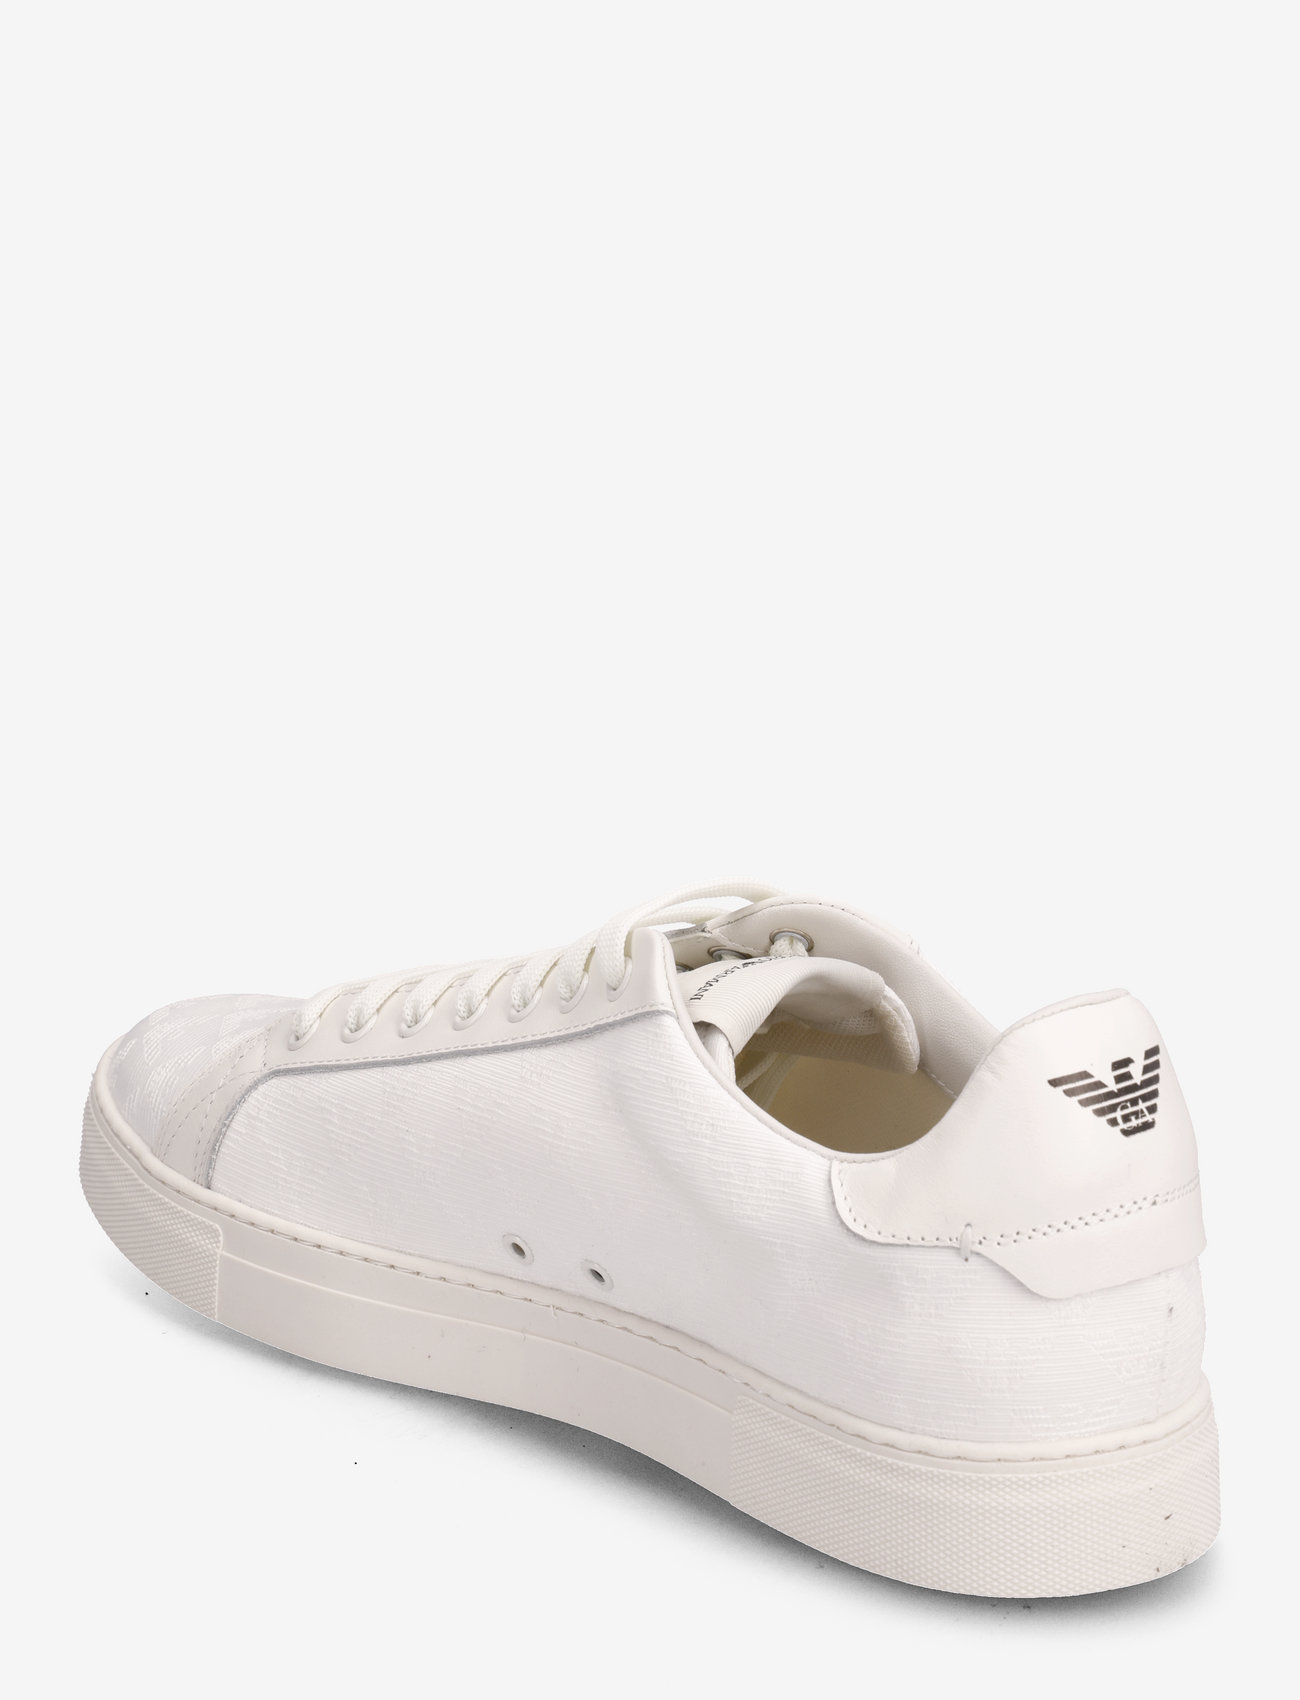 flyde over månedlige bevægelse Emporio Armani Sneaker (Off White-off White), 720 kr | Stort udvalg af  designer mærker | Booztlet.com